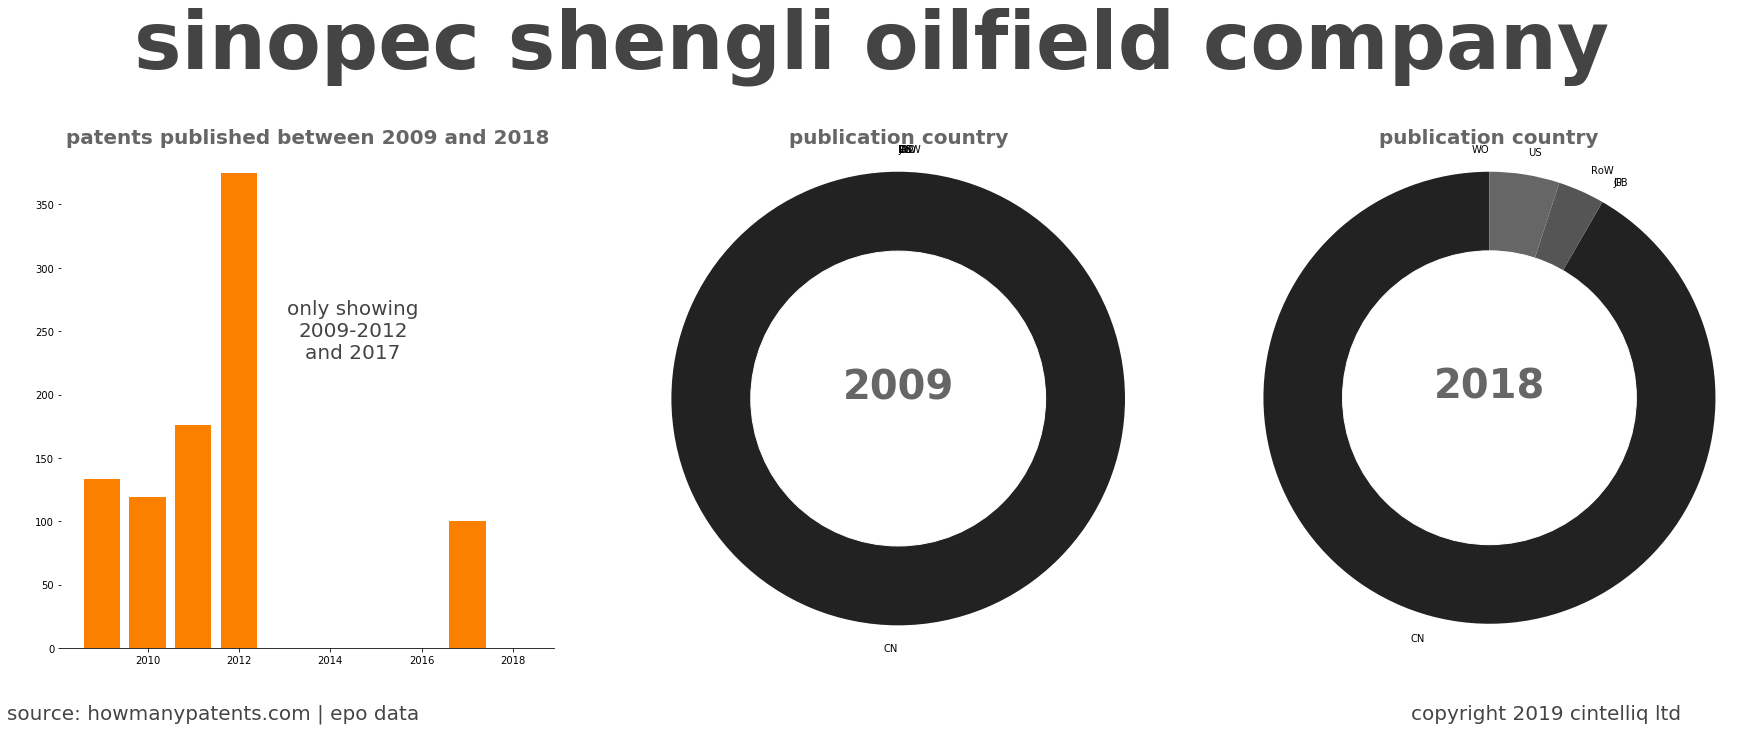 summary of patents for Sinopec Shengli Oilfield Company